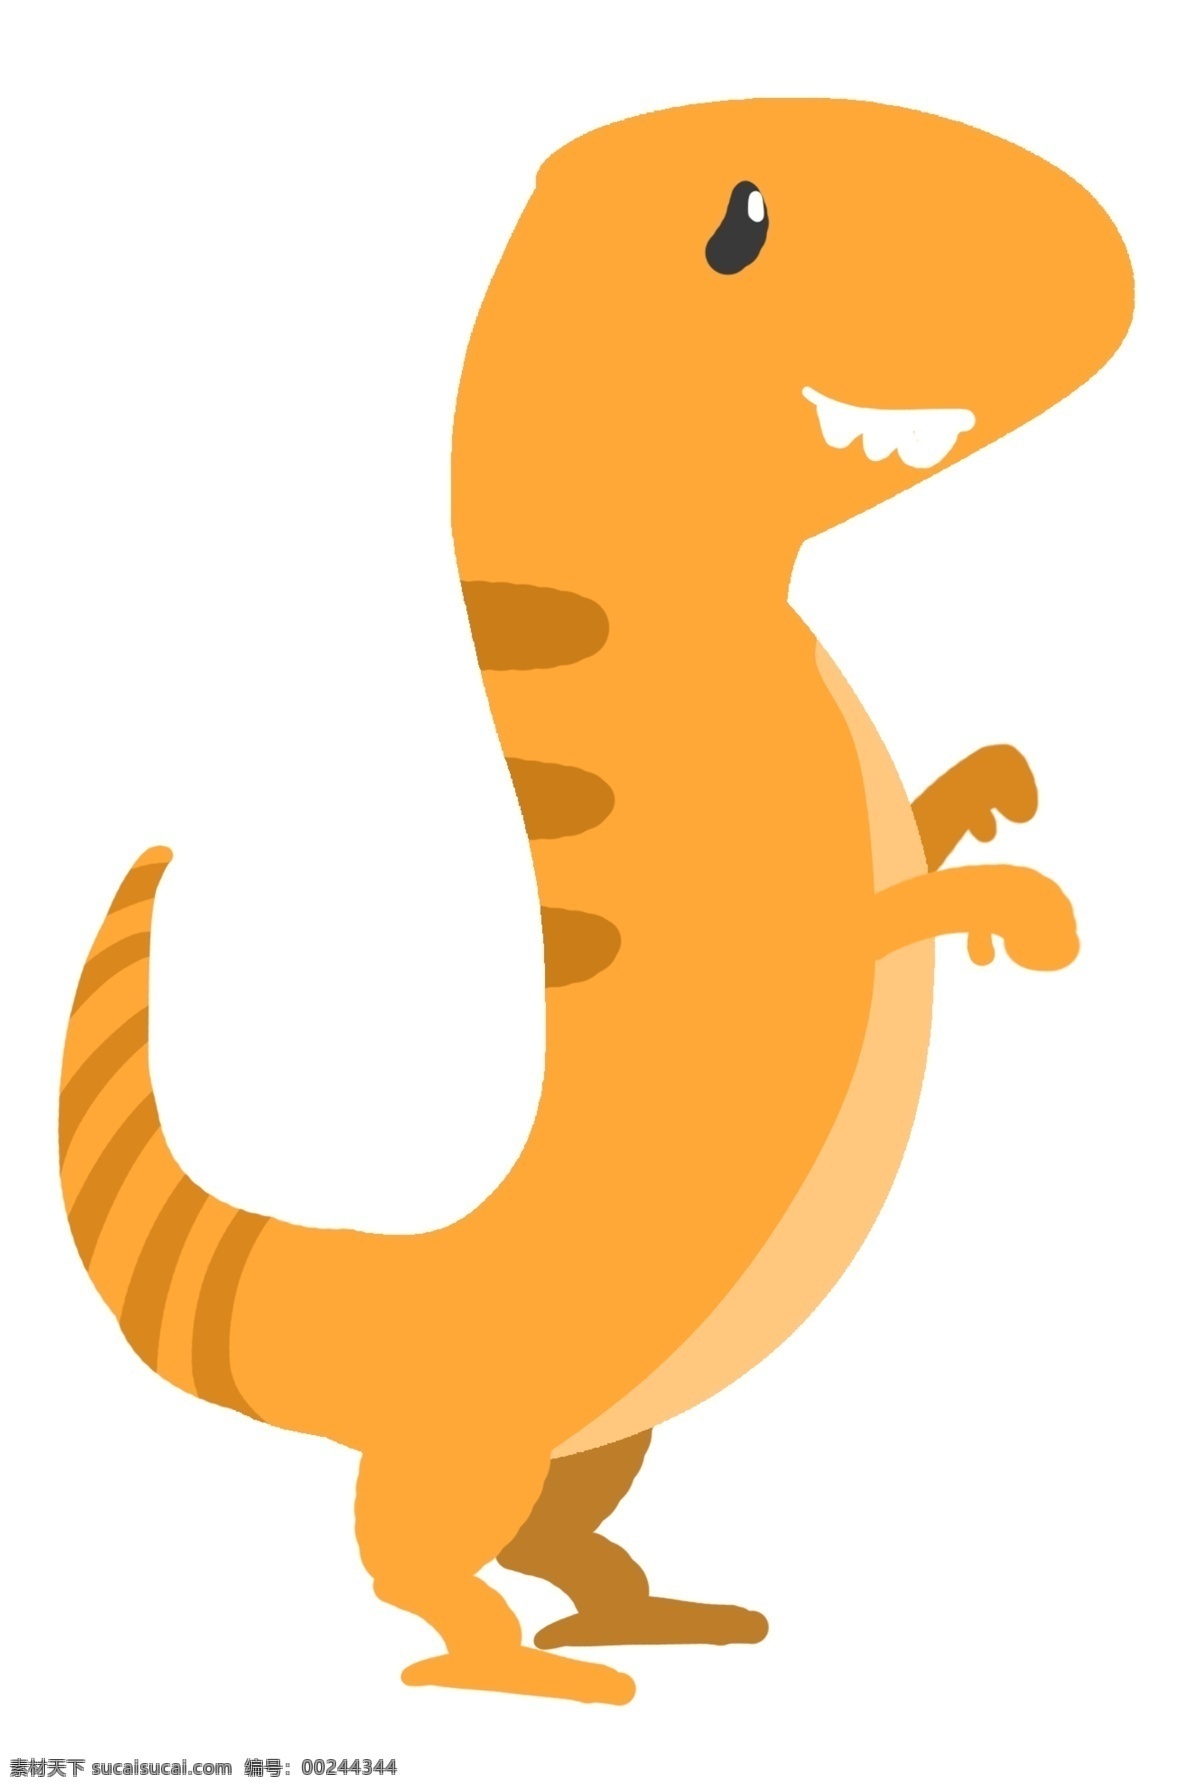 可爱 恐龙 卡通 插画 卡通插画 动物插画 动物 恐龙动物 恐龙插画 可爱恐龙 黄色的恐龙 好看的恐龙